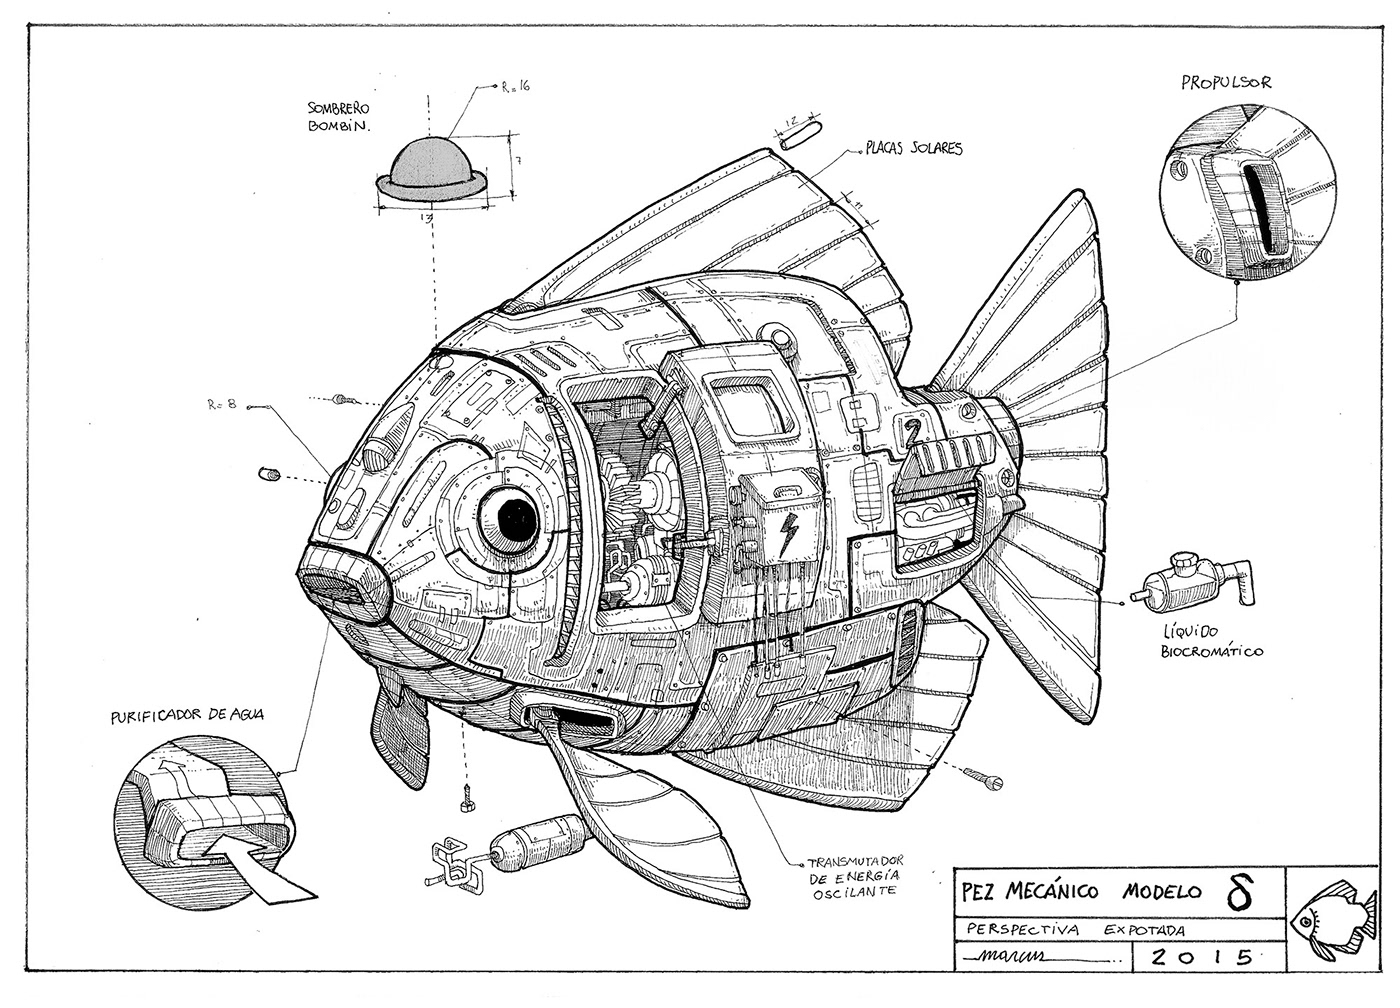 3D conceptart fish modeling rad robot ships Videogames